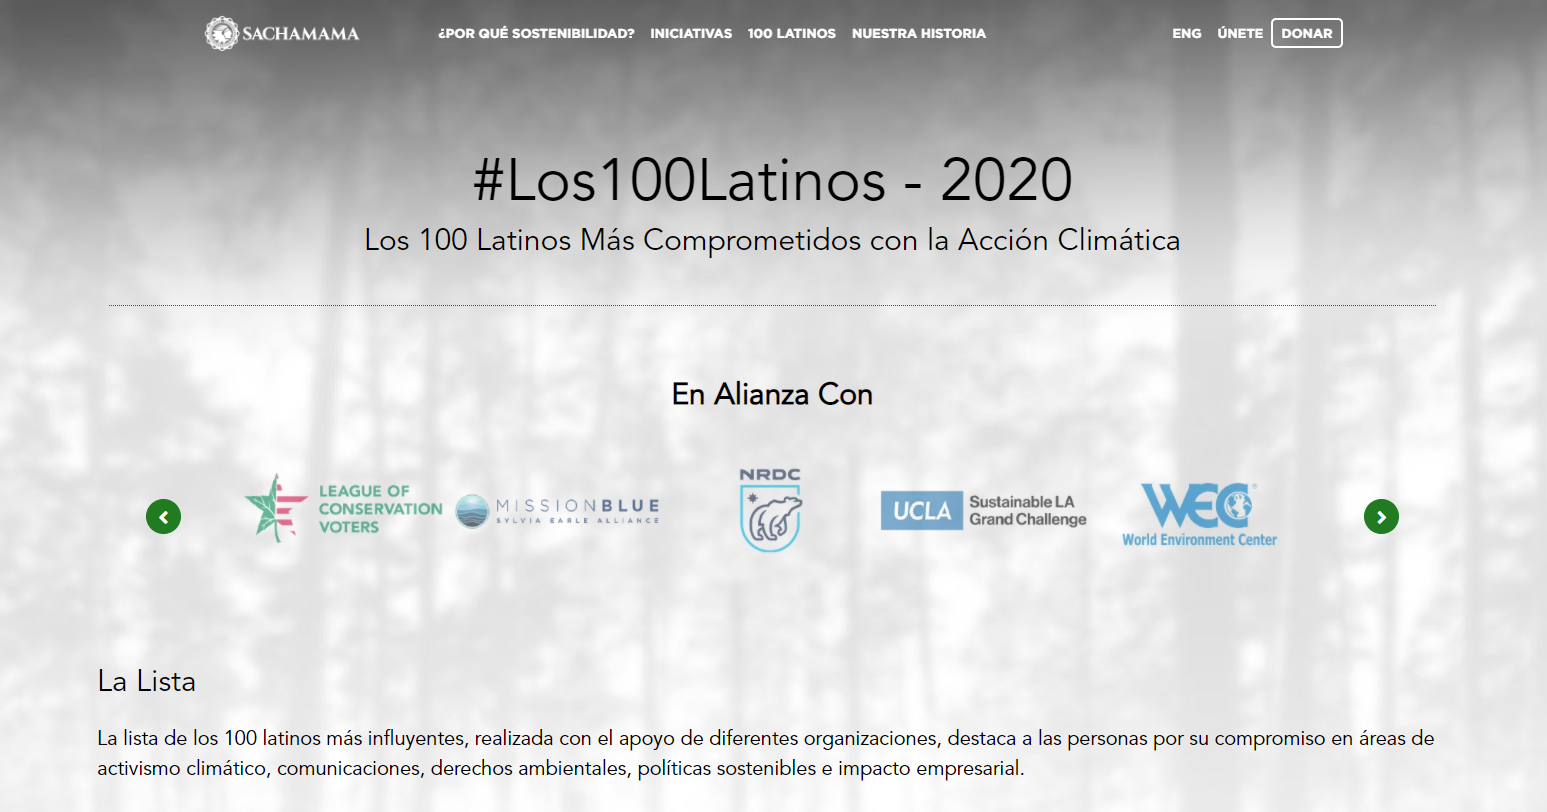 La lista de los 100 latinos más influyentes, realizada por Sachamama con el apoyo de diferentes organizaciones, destaca a las personas por su compromiso en áreas de activismo climático, comunicaciones, derechos ambientales, políticas sostenibles e impacto empresarial. https://sachamama.org/los-100-latinos-2020/?lang=es